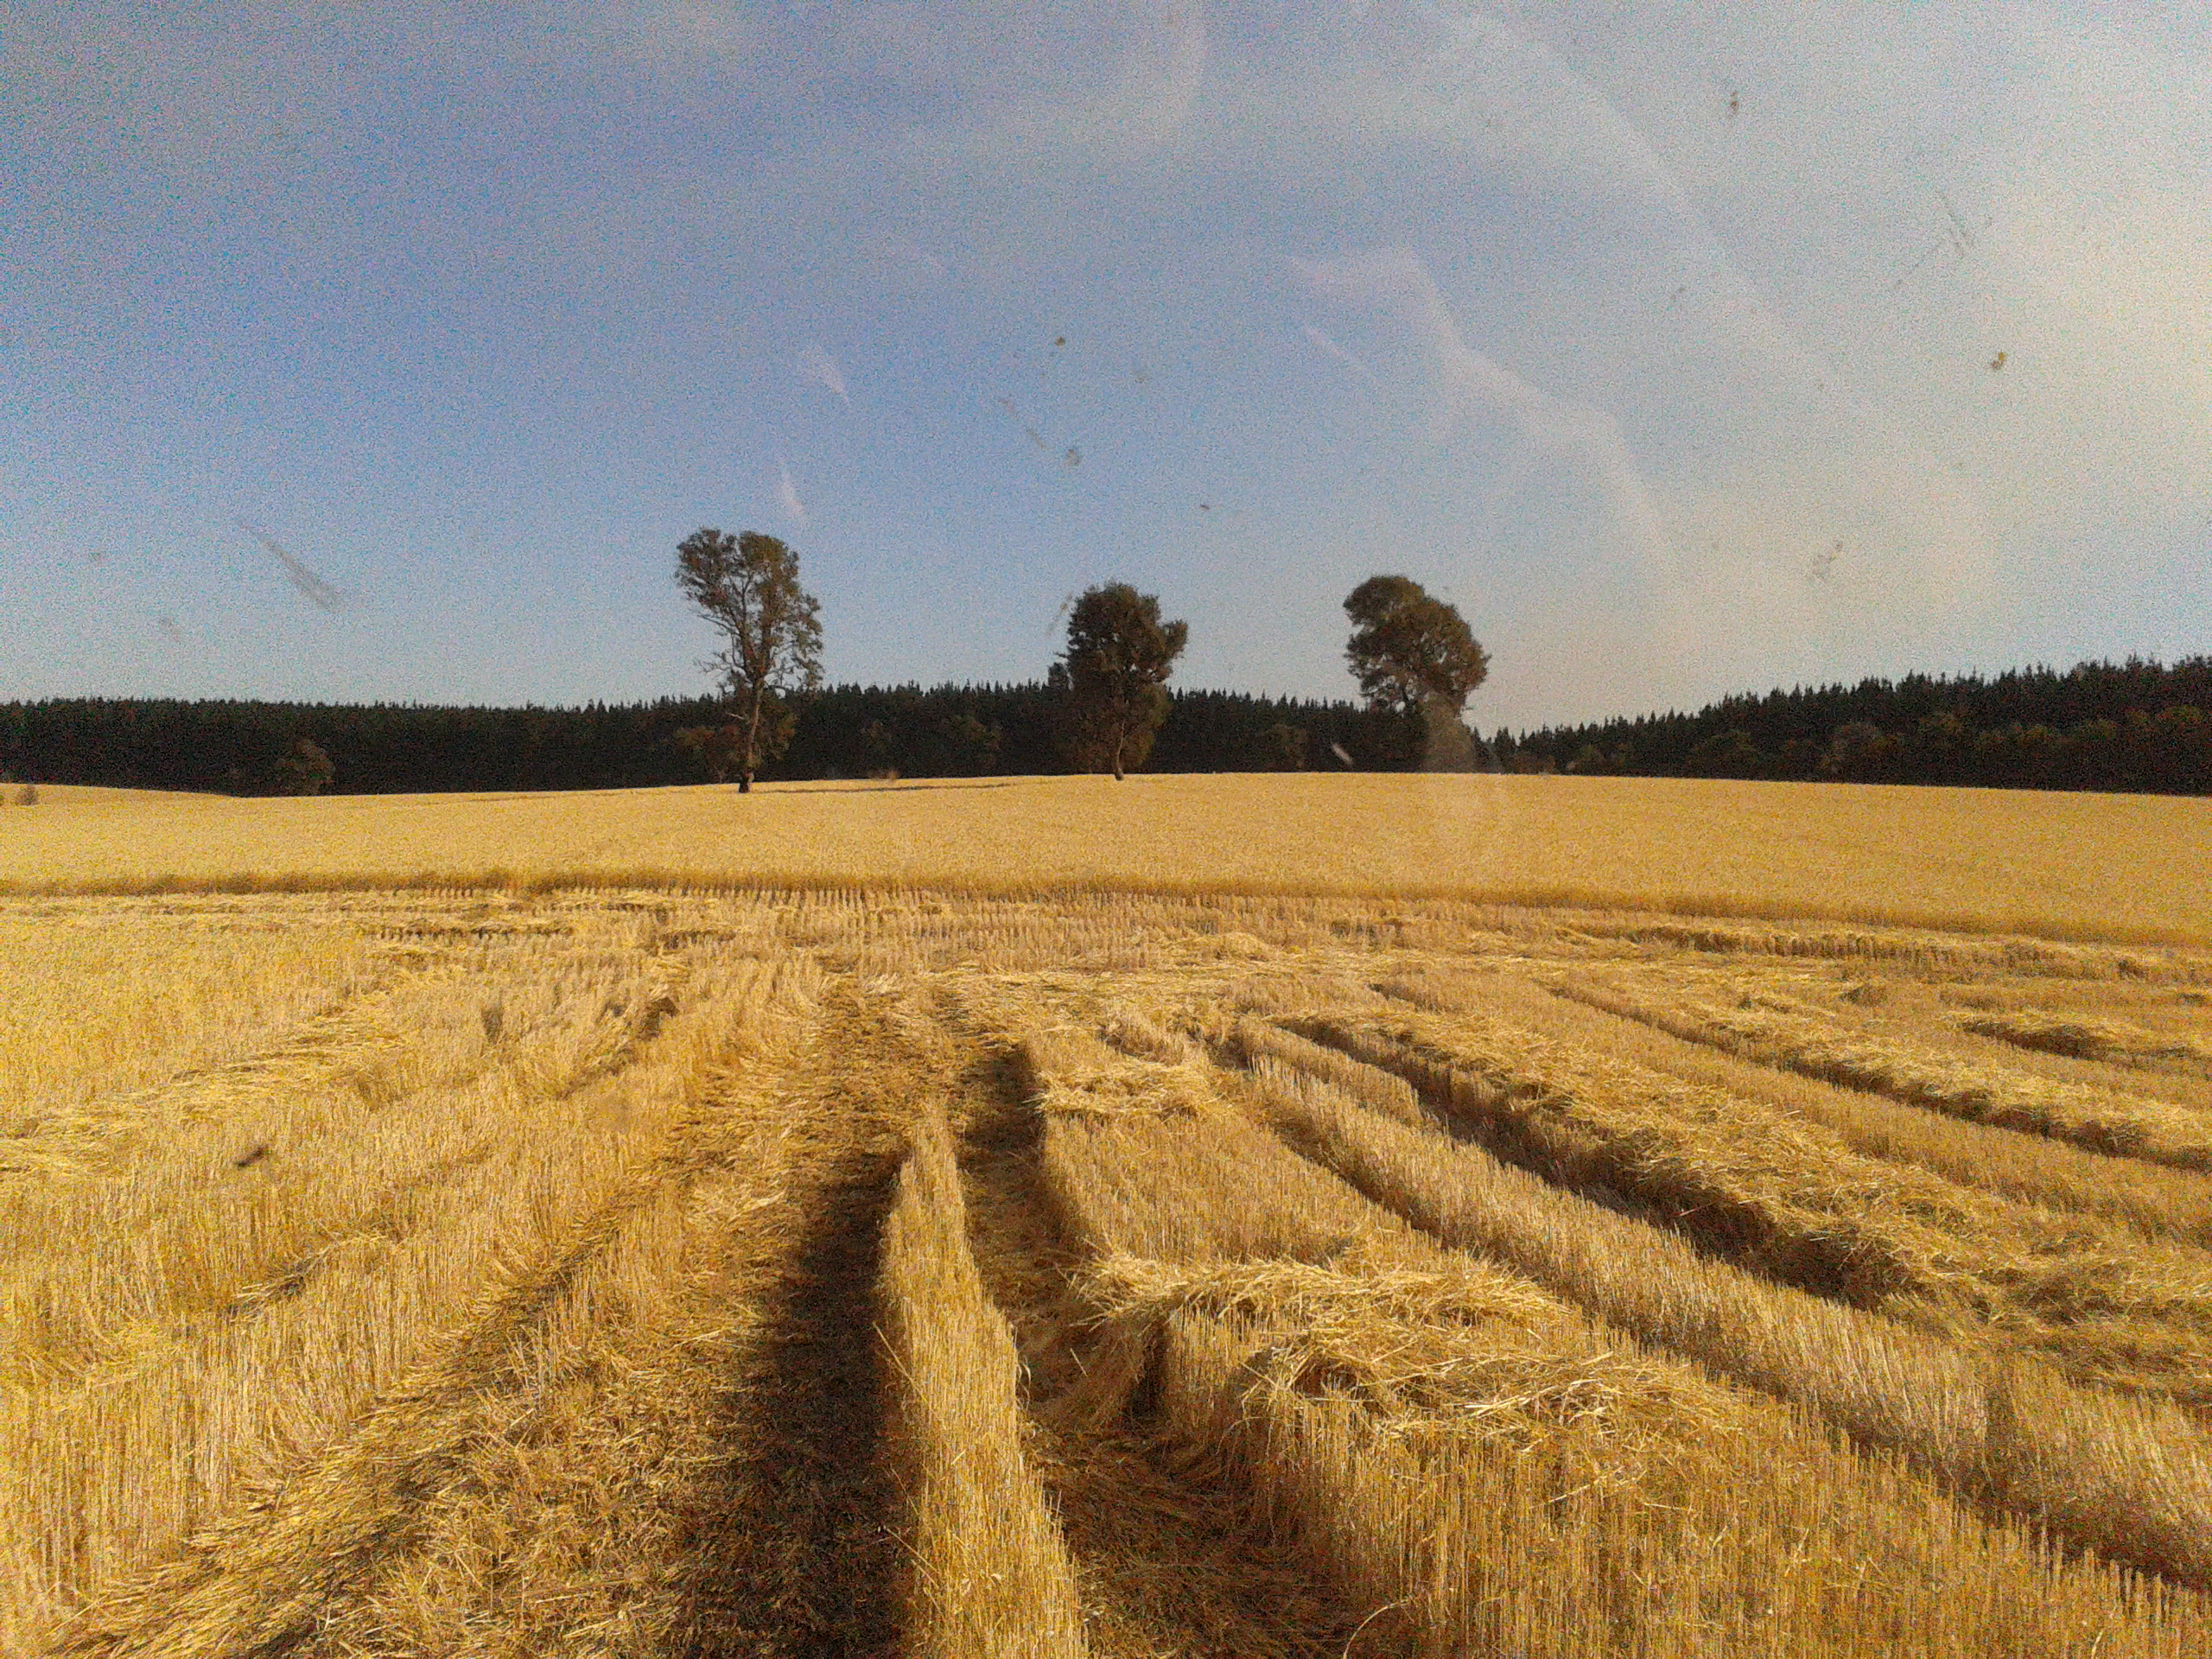 RS inicia plantio de trigo sem umidade ideal no solo